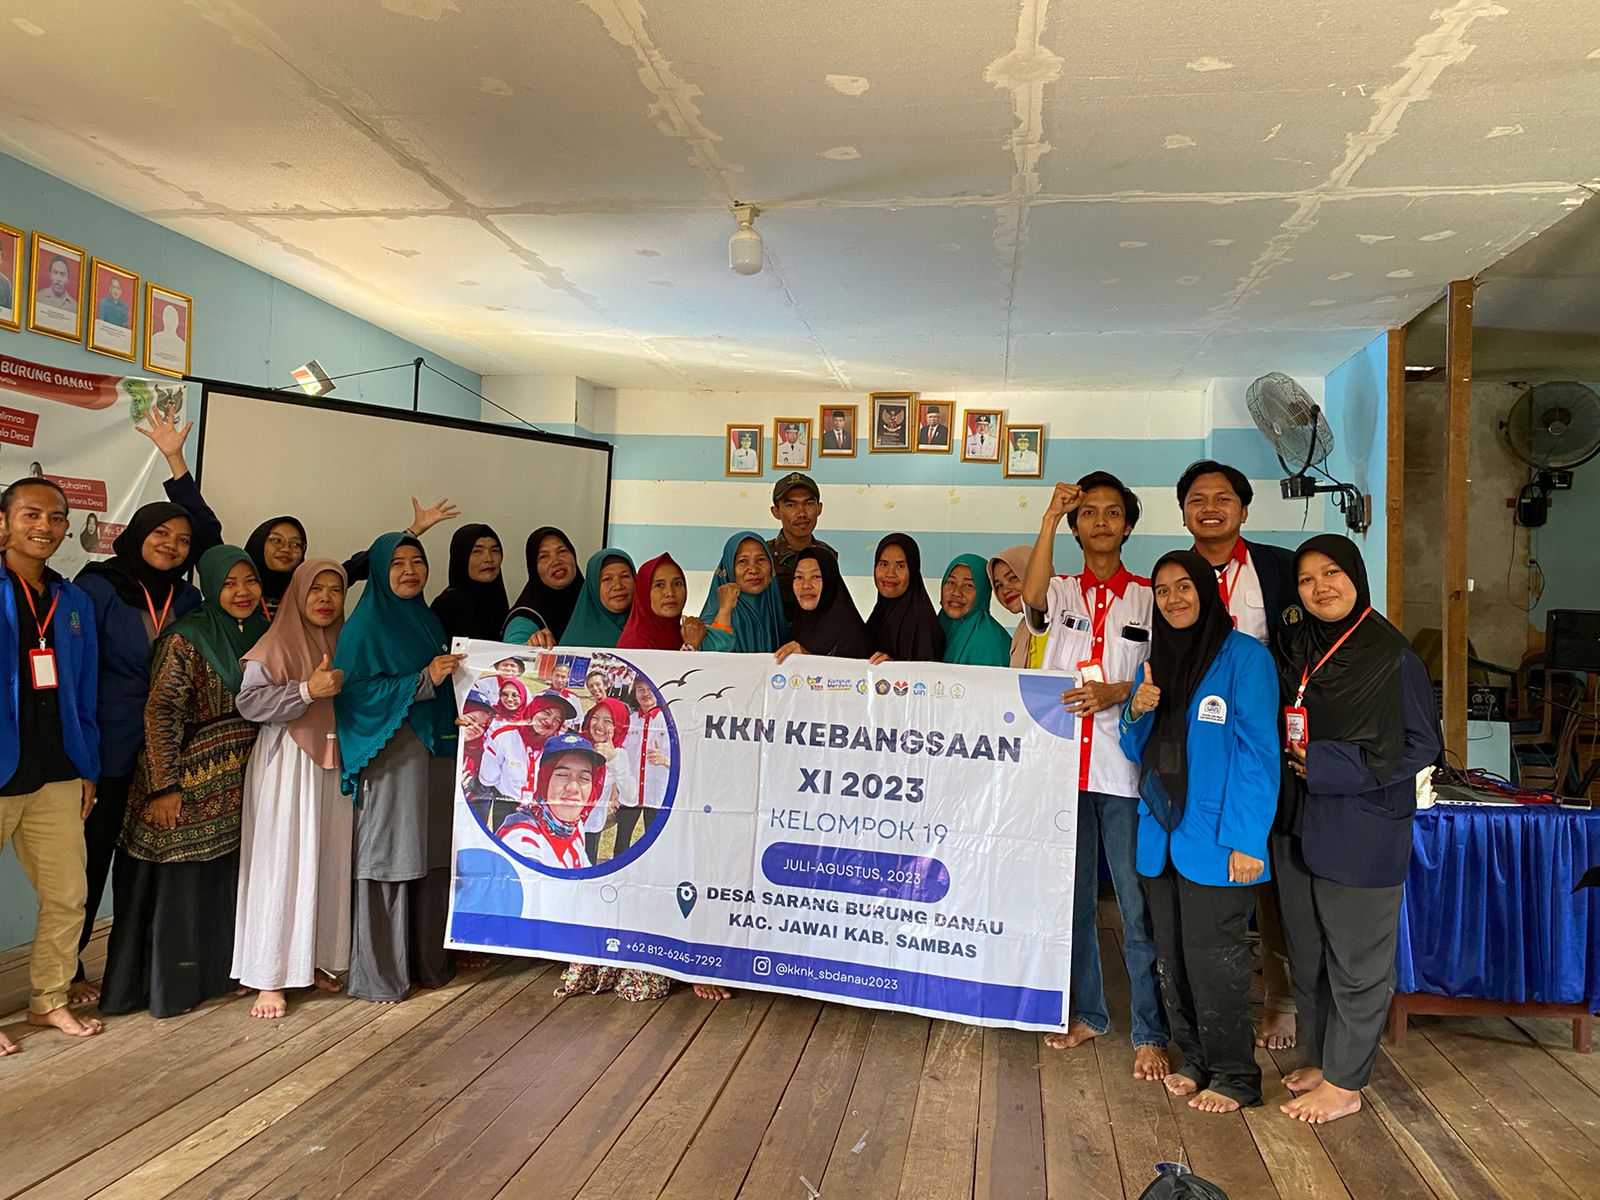 Peserta KKN Kebangsaan 2023 kelompok 19 yang diutus di Desa Sarang Burung Danau, Kabupaten Sambas. (Foto: Jau)